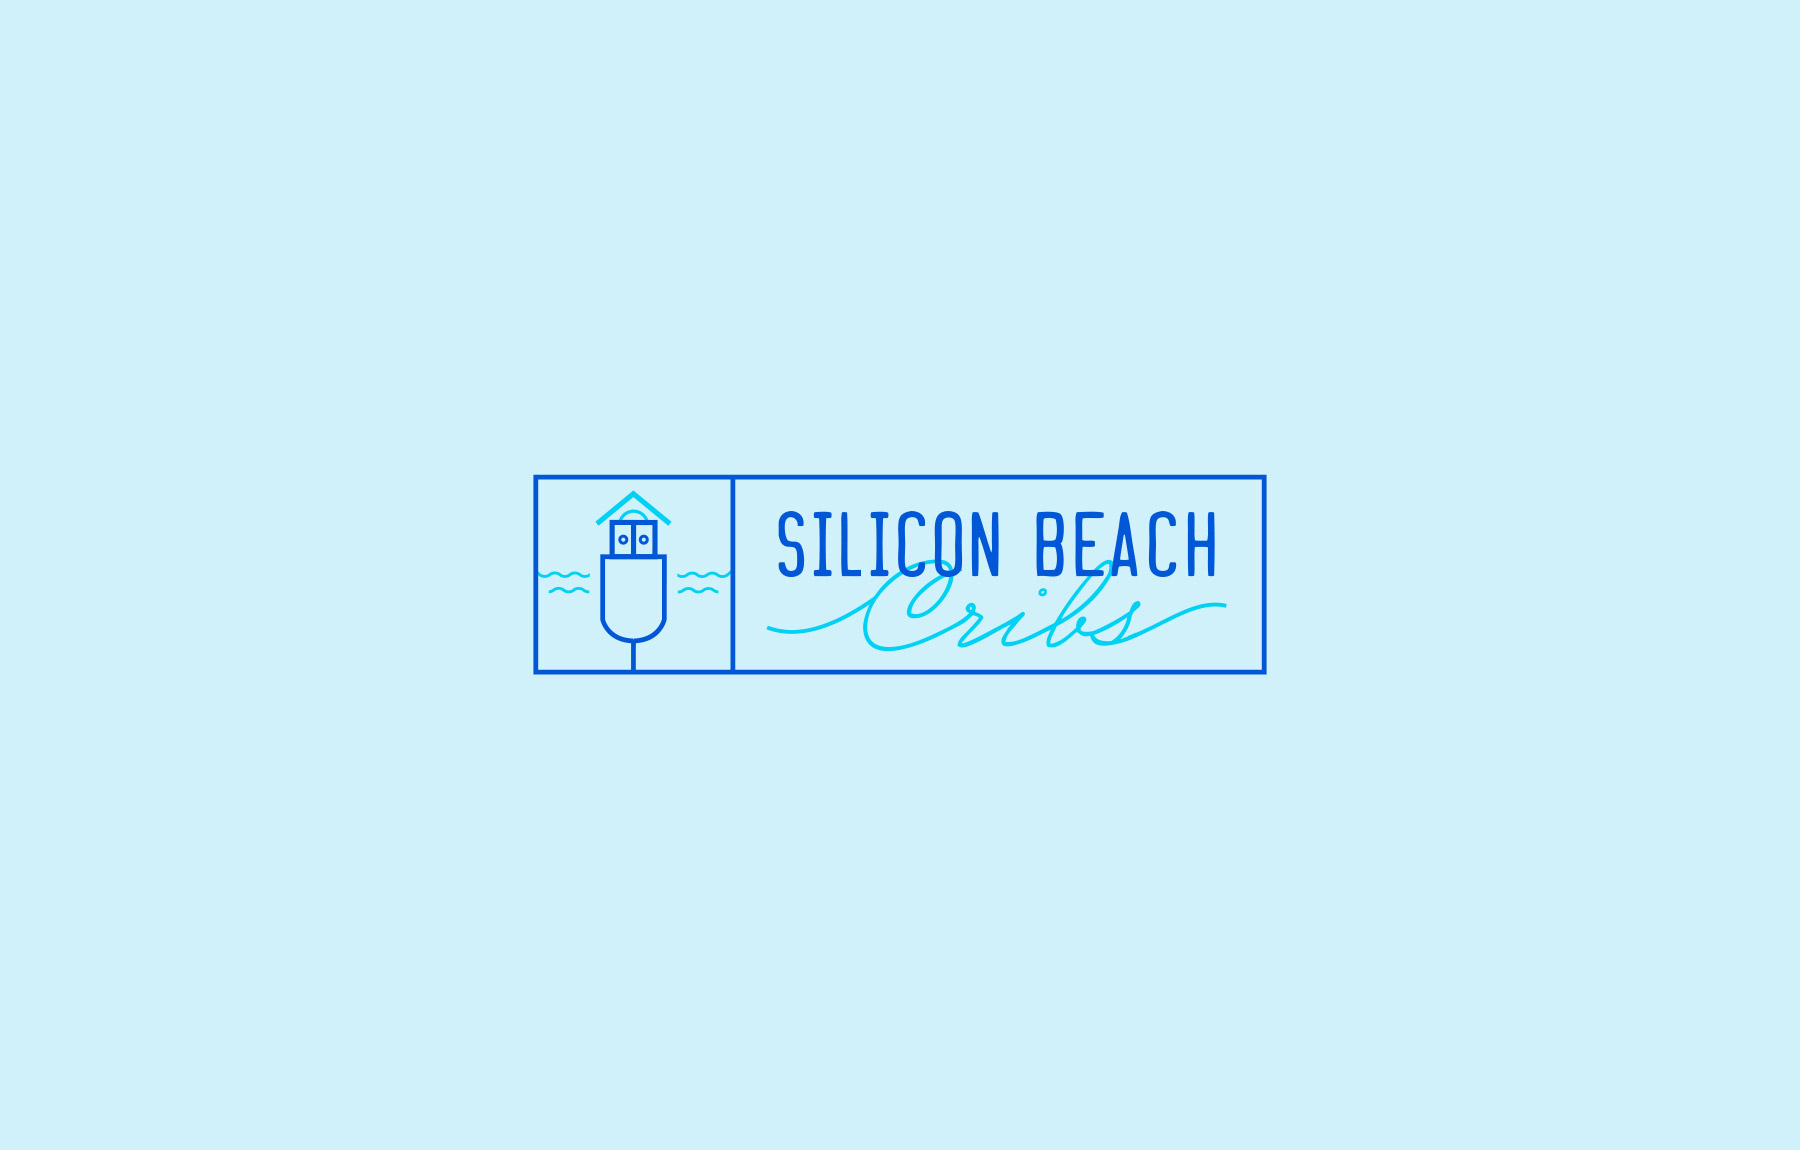 Silicon Beach Cribs company logo